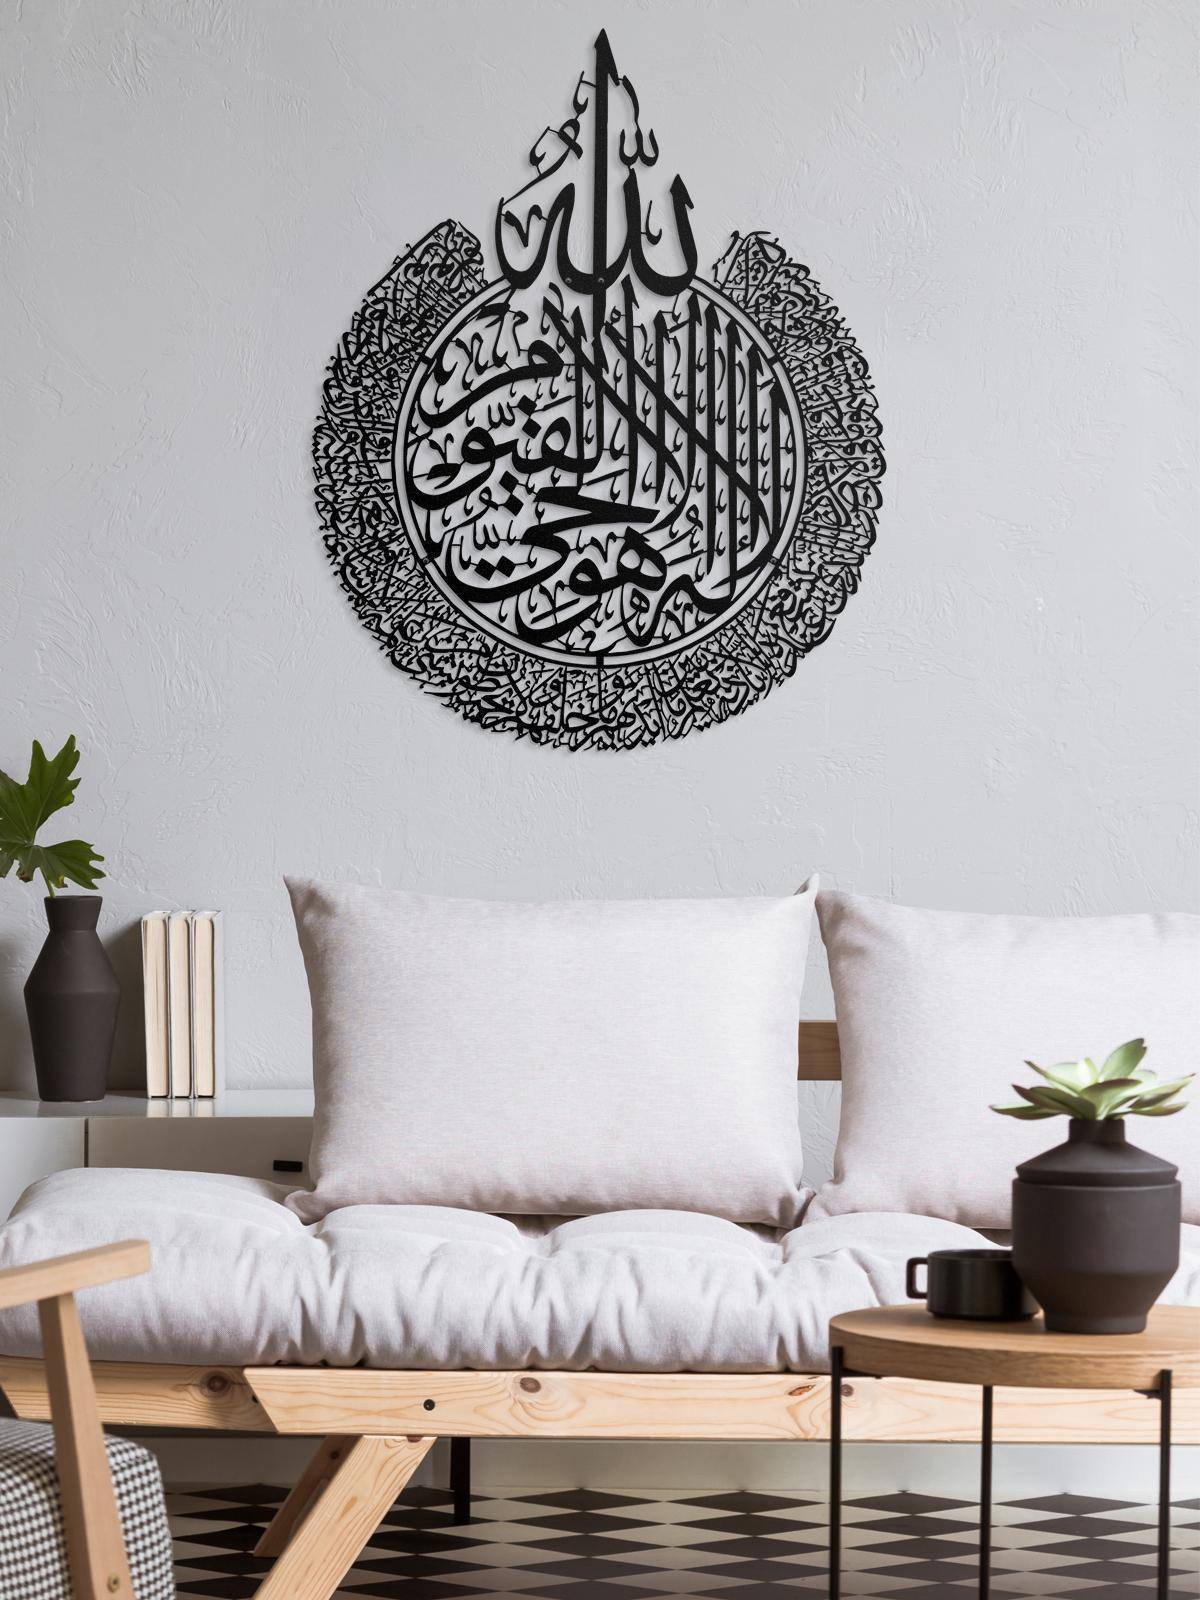 Ayet-el Kürsi Yazılı Dekoratif Metal Duvar Tablosu - Metalium Concept